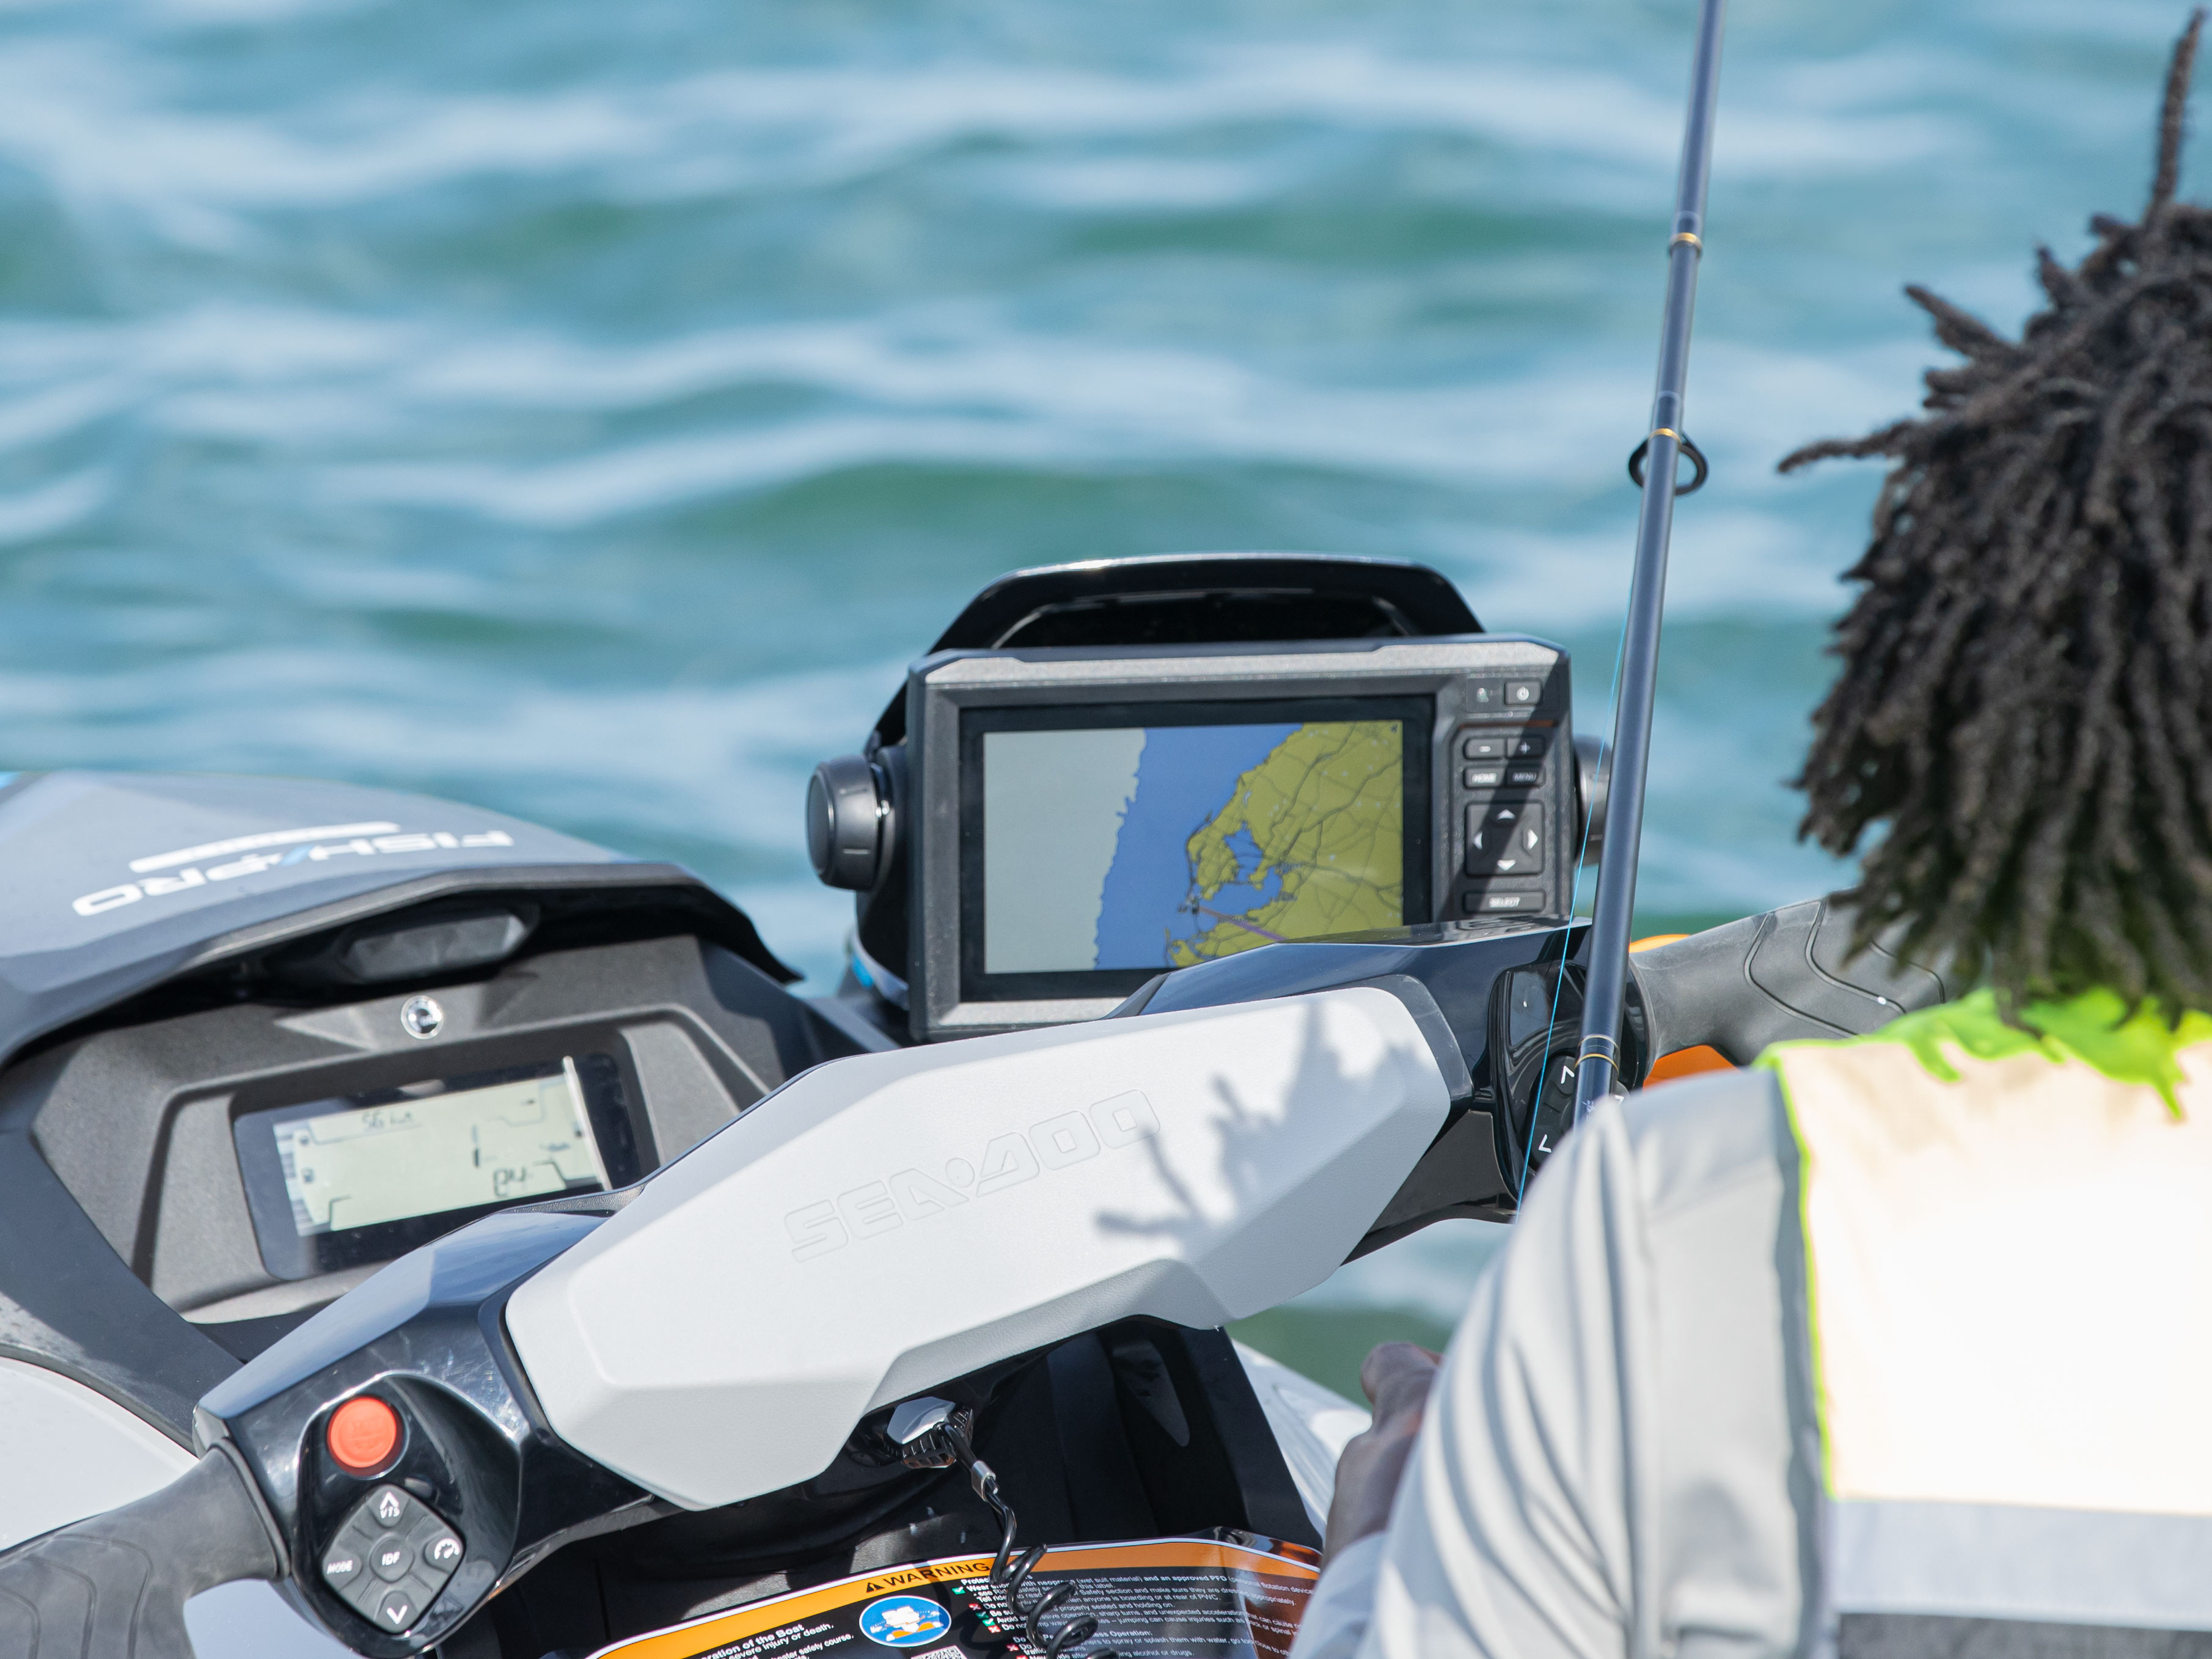 Garmin navigation and fish finder